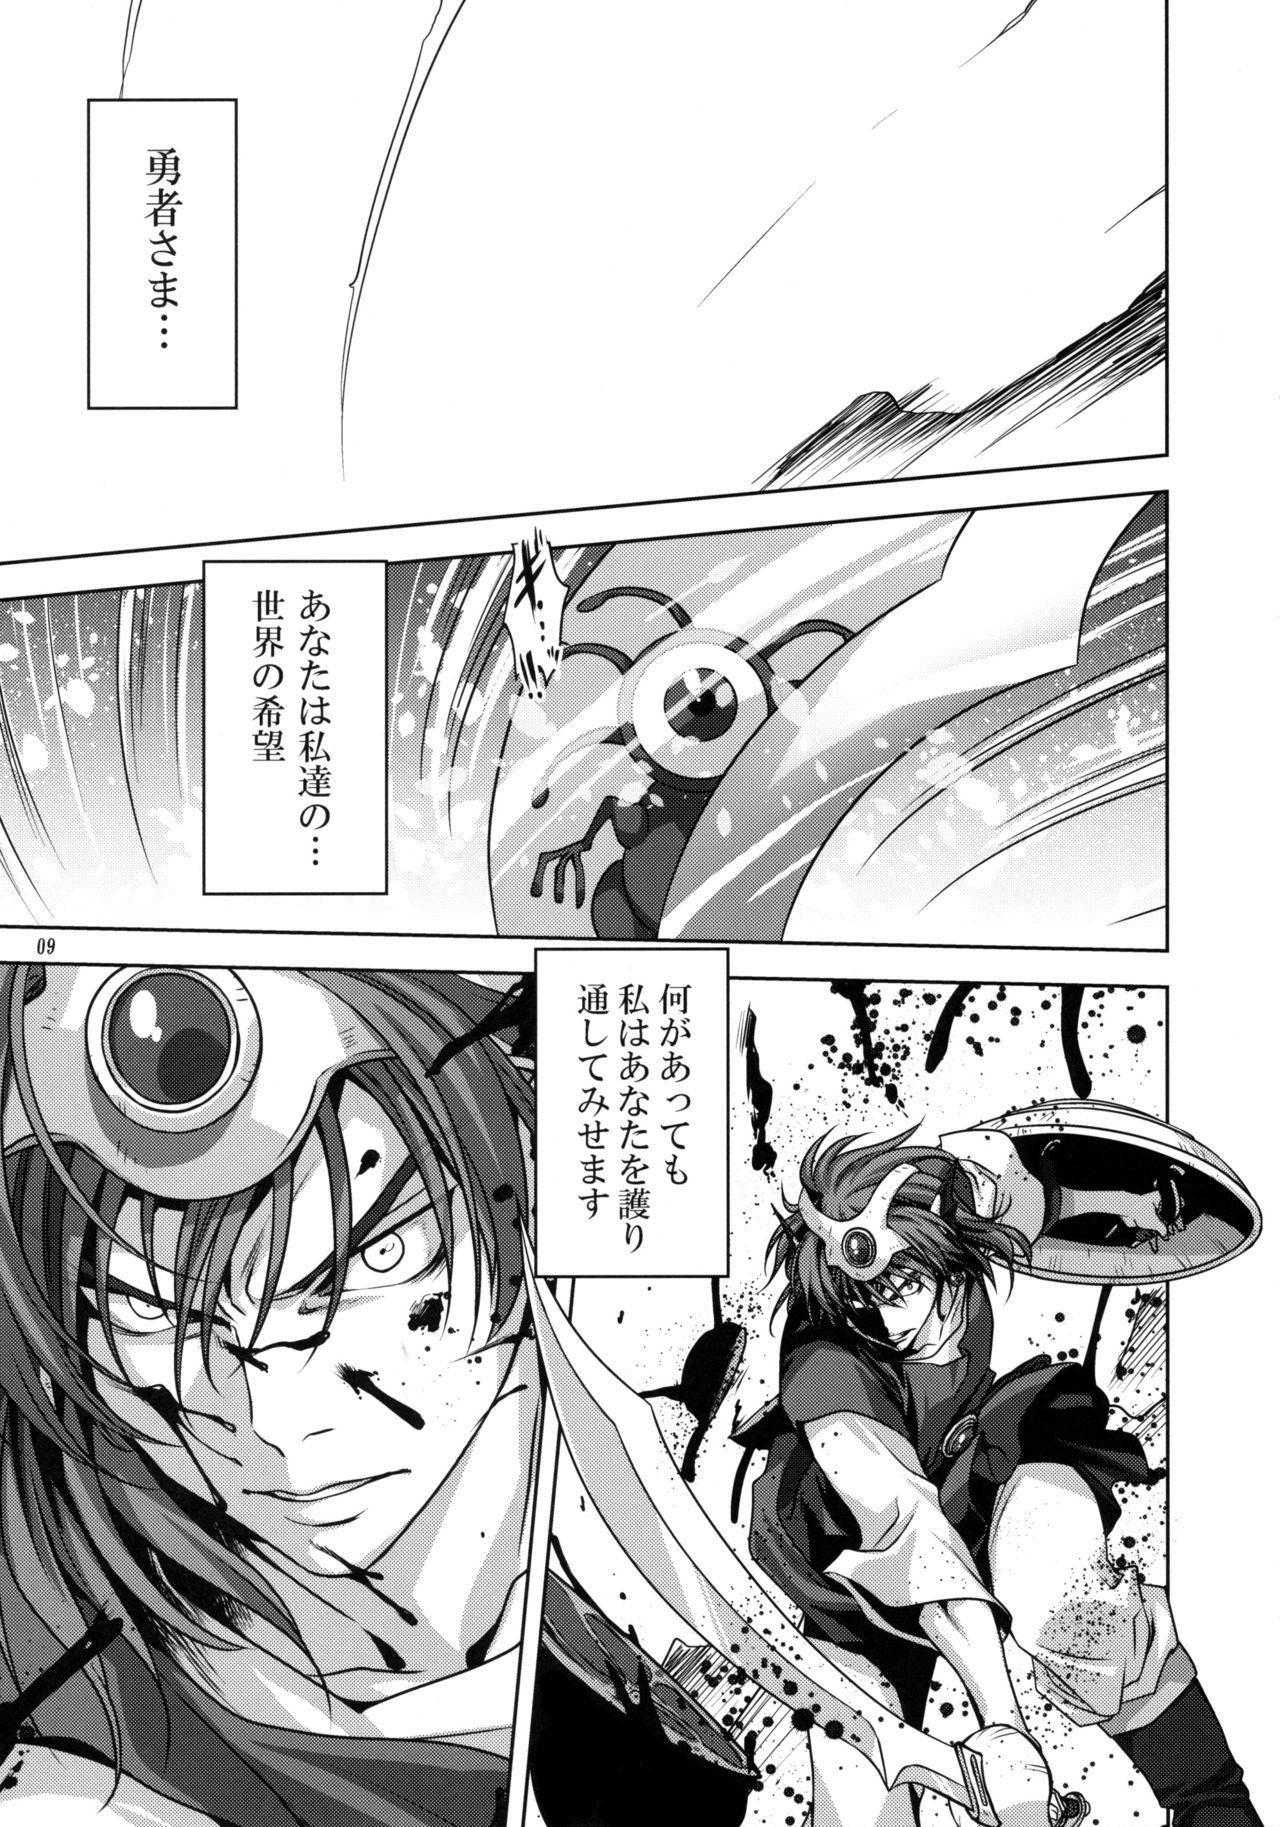 Police Anata ga Watashi no Yuusha-sama - Dragon quest iv Free Fucking - Page 8